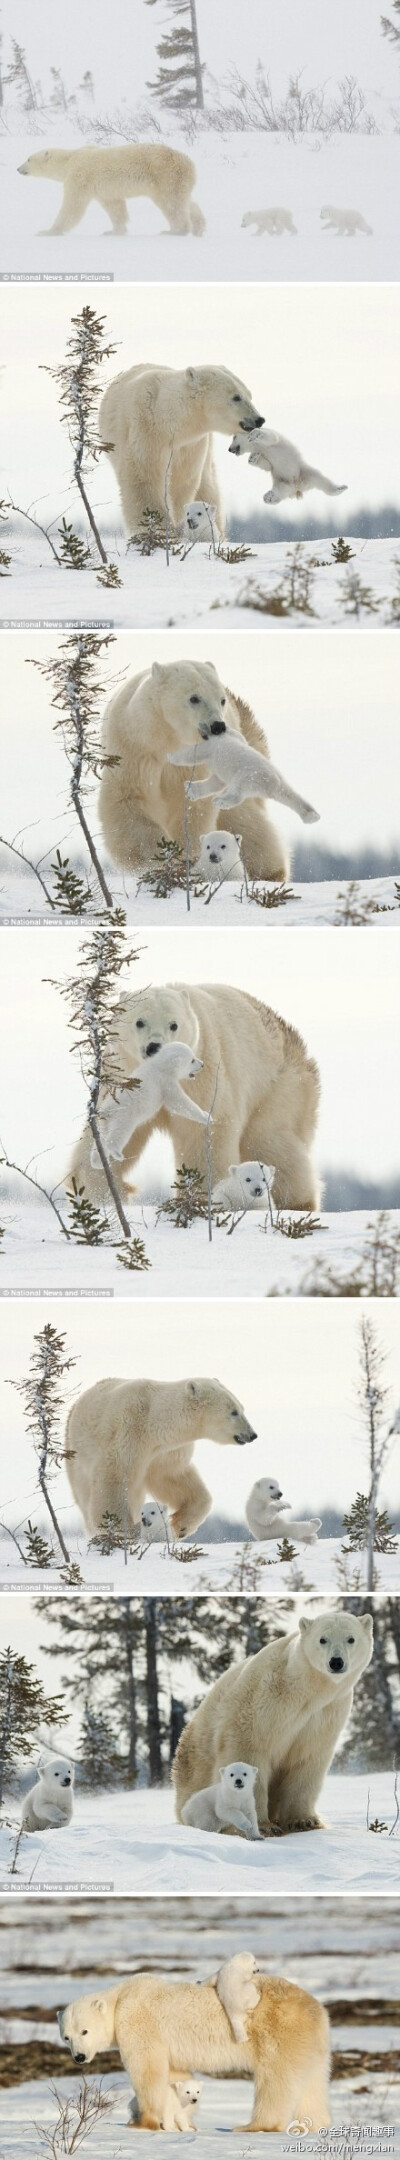 北极熊妈妈和它的两个孩子已经跋涉了50多公里，它们要冒着严寒风雪前往加拿大哈得孙湾觅食。两个小家伙看着有点累了，熊妈妈用嘴叼起一只小熊在空中摆动。小家伙好像在说，妈妈快把我放下。在漫漫迁徙途中，小熊有时…